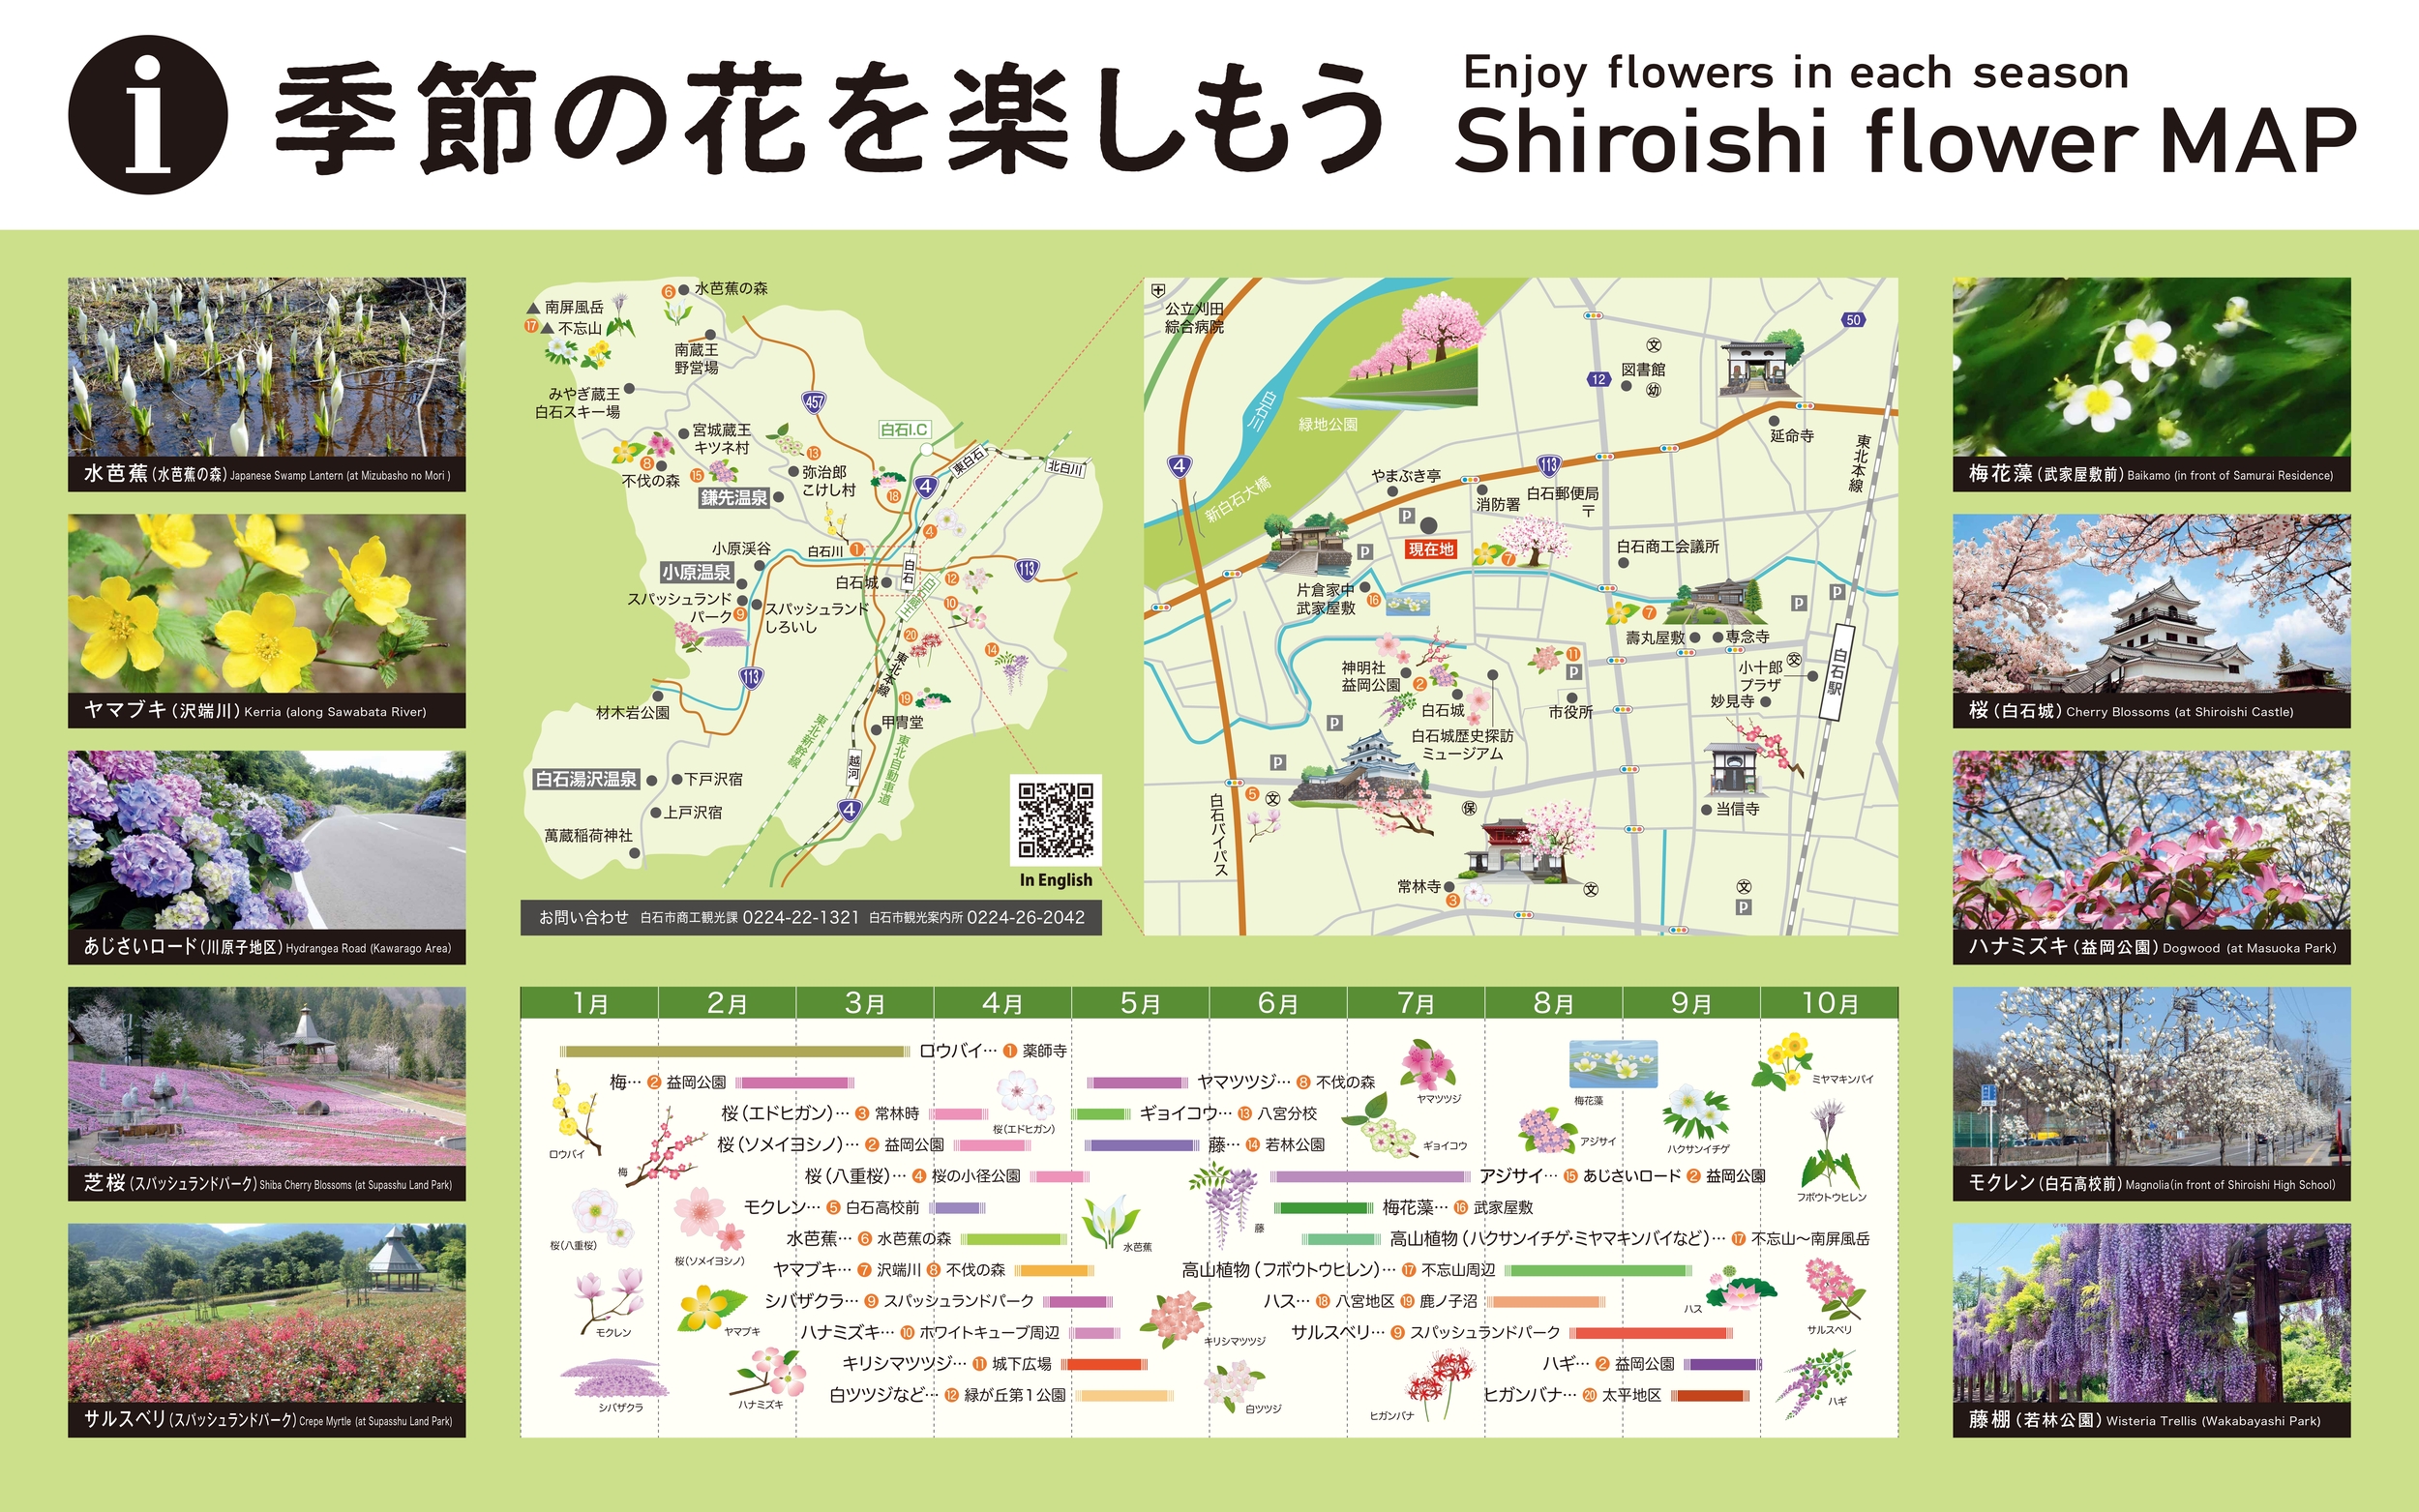 “Shiroishi flower MAP” ~Enjoy flowers in each season!~